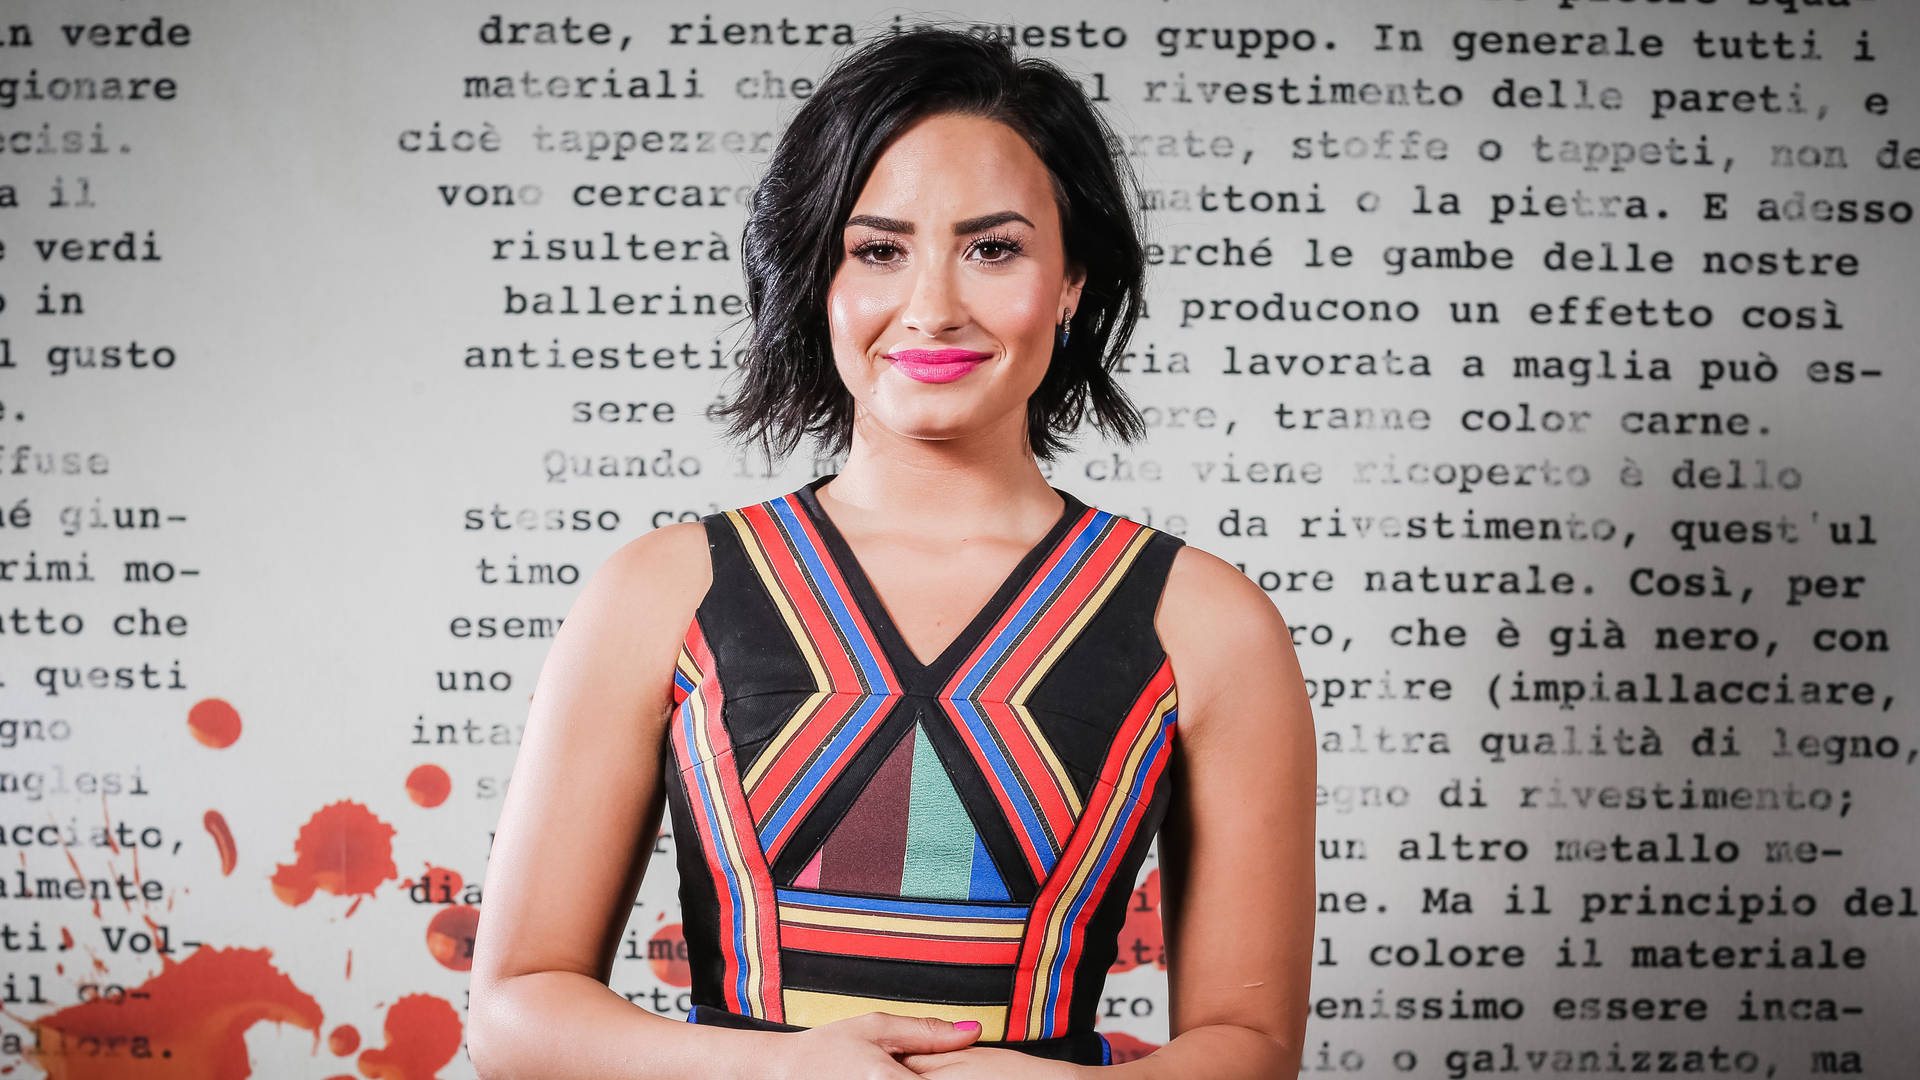 A Very Pretty Demi Lovato Background